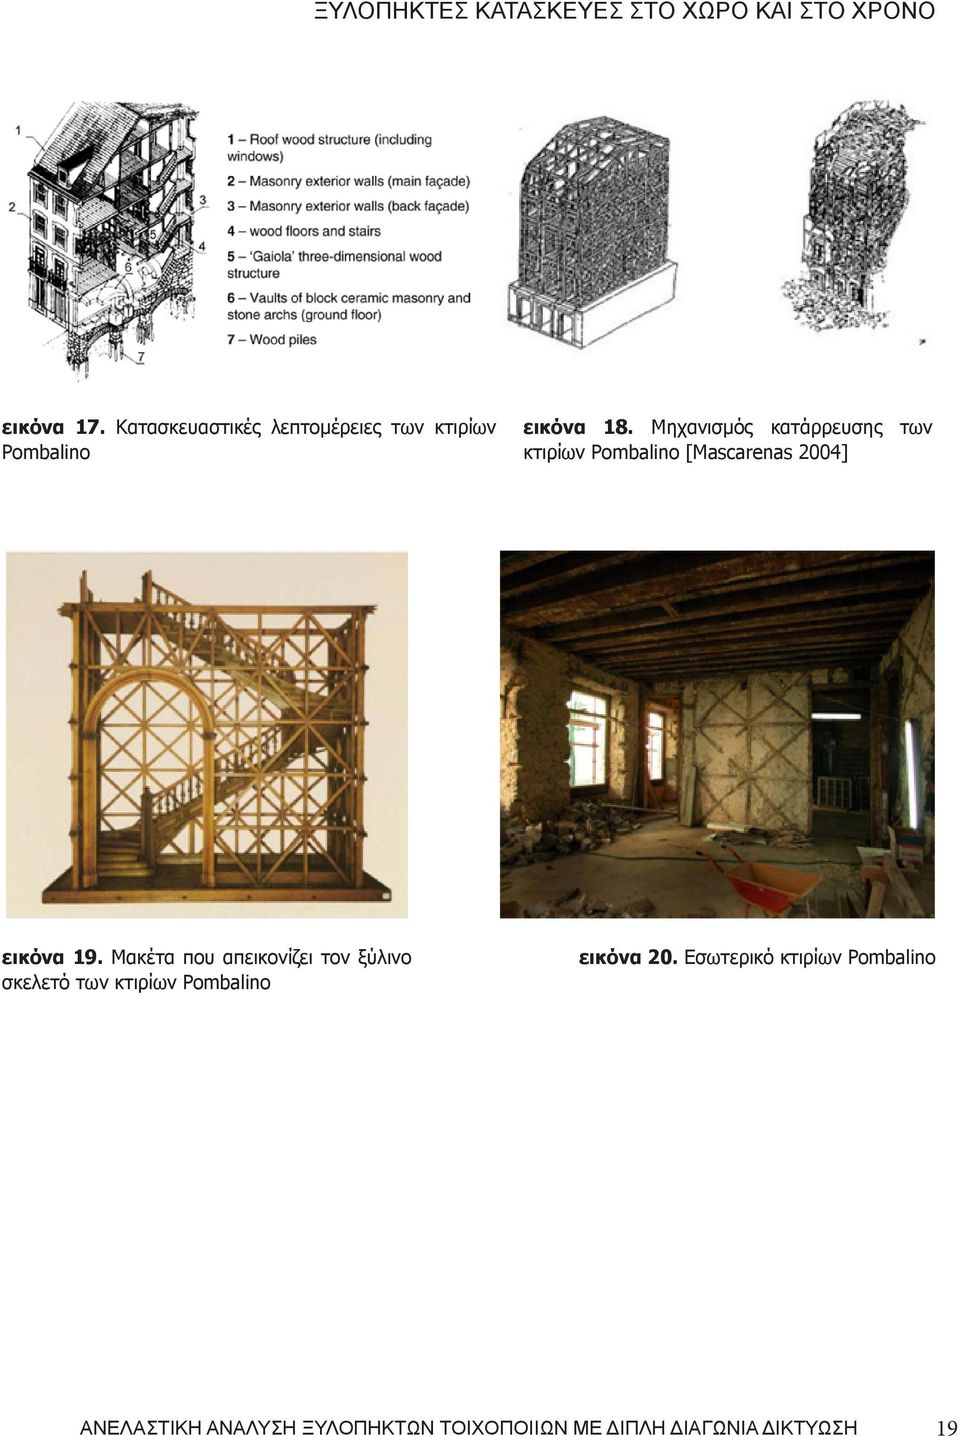 Μηχανισμός κατάρρευσης των κτιρίων Pombalino [Mascarenas 2004] εικόνα 19.